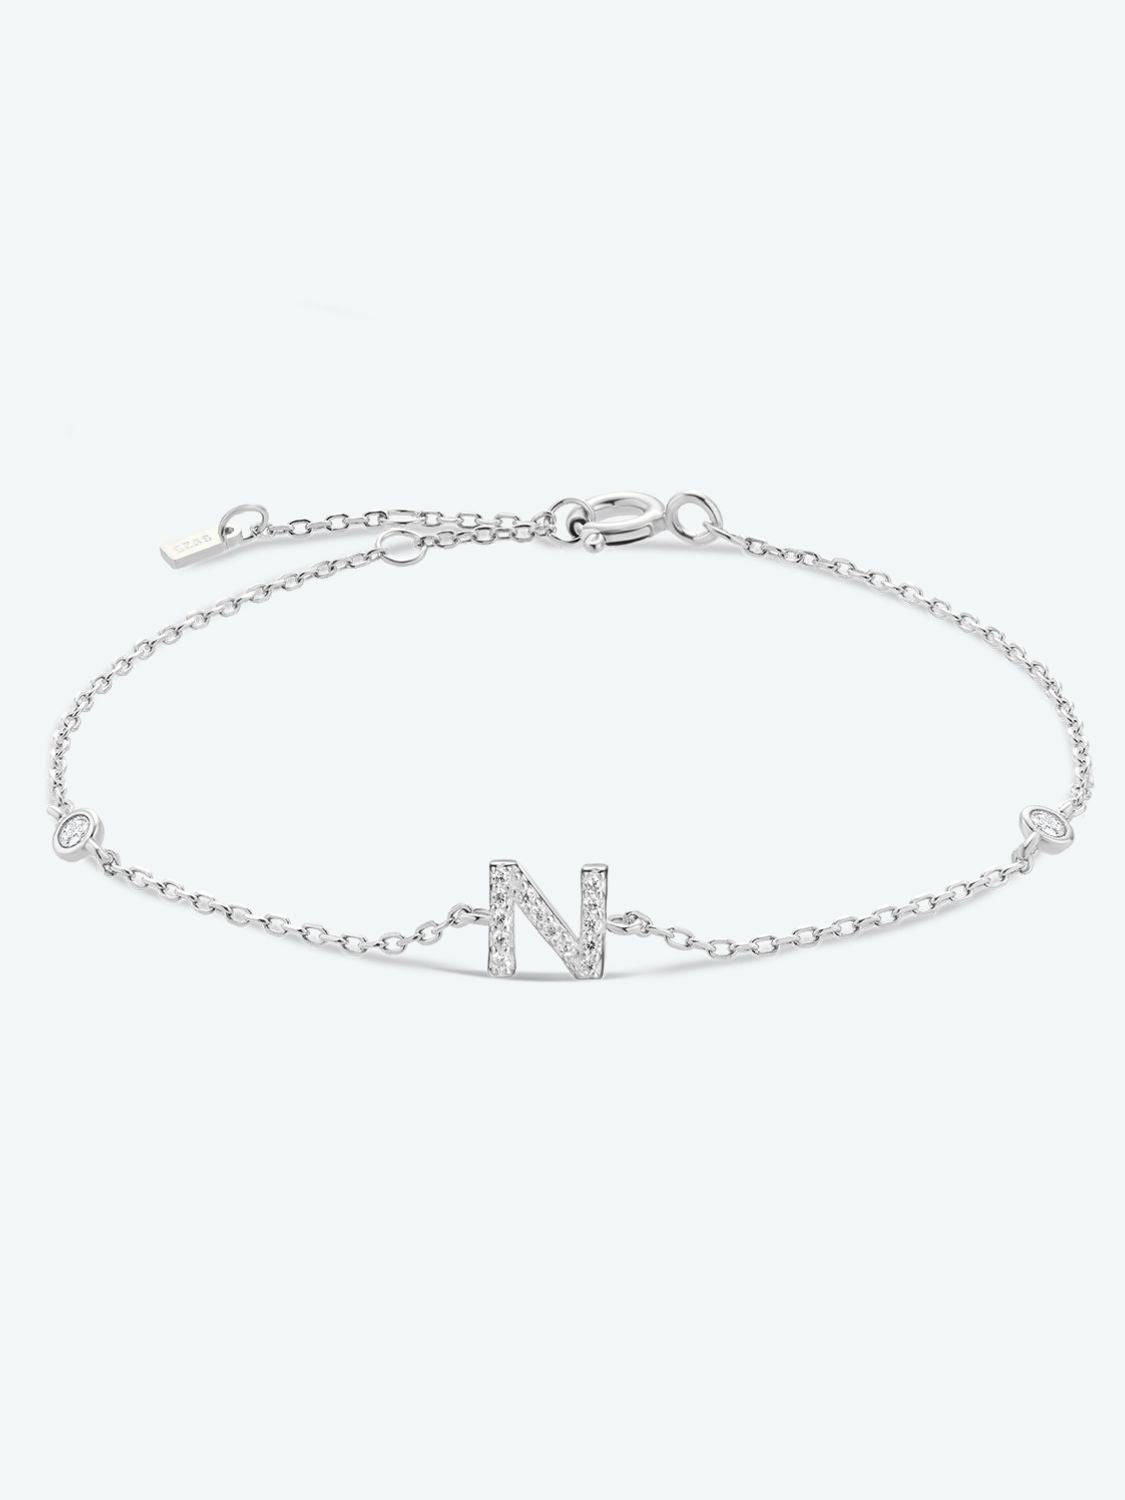 L To P Zircon 925 Sterling Silver Bracelet - N-Silver / One Size - Women’s Jewelry - Bracelets - 16 - 2024